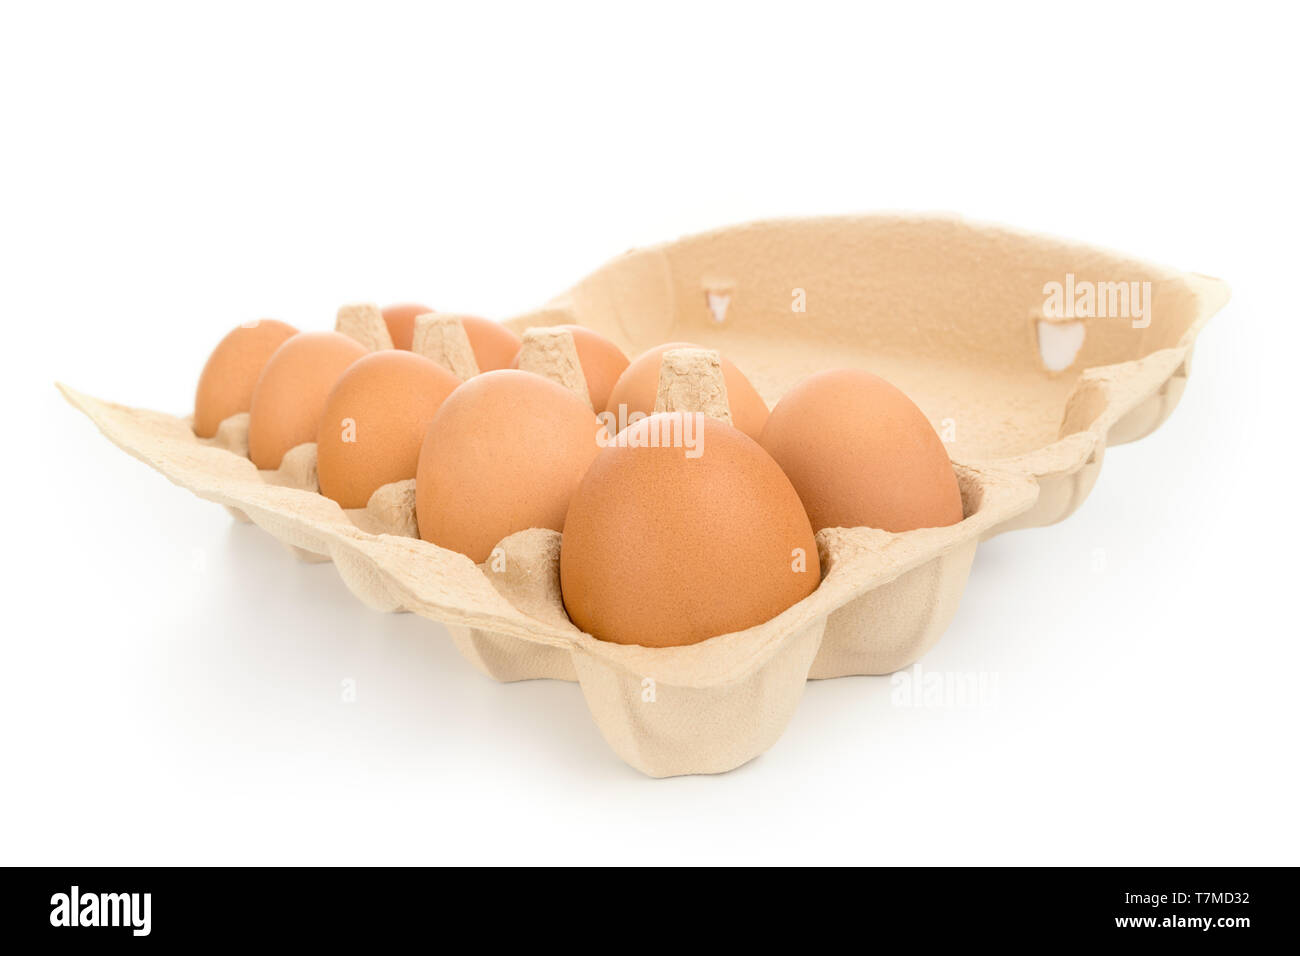 Confezione di grandi brown uova di gallina con scatola di cartone un ampio angolo di visione isolato su bianco Foto Stock